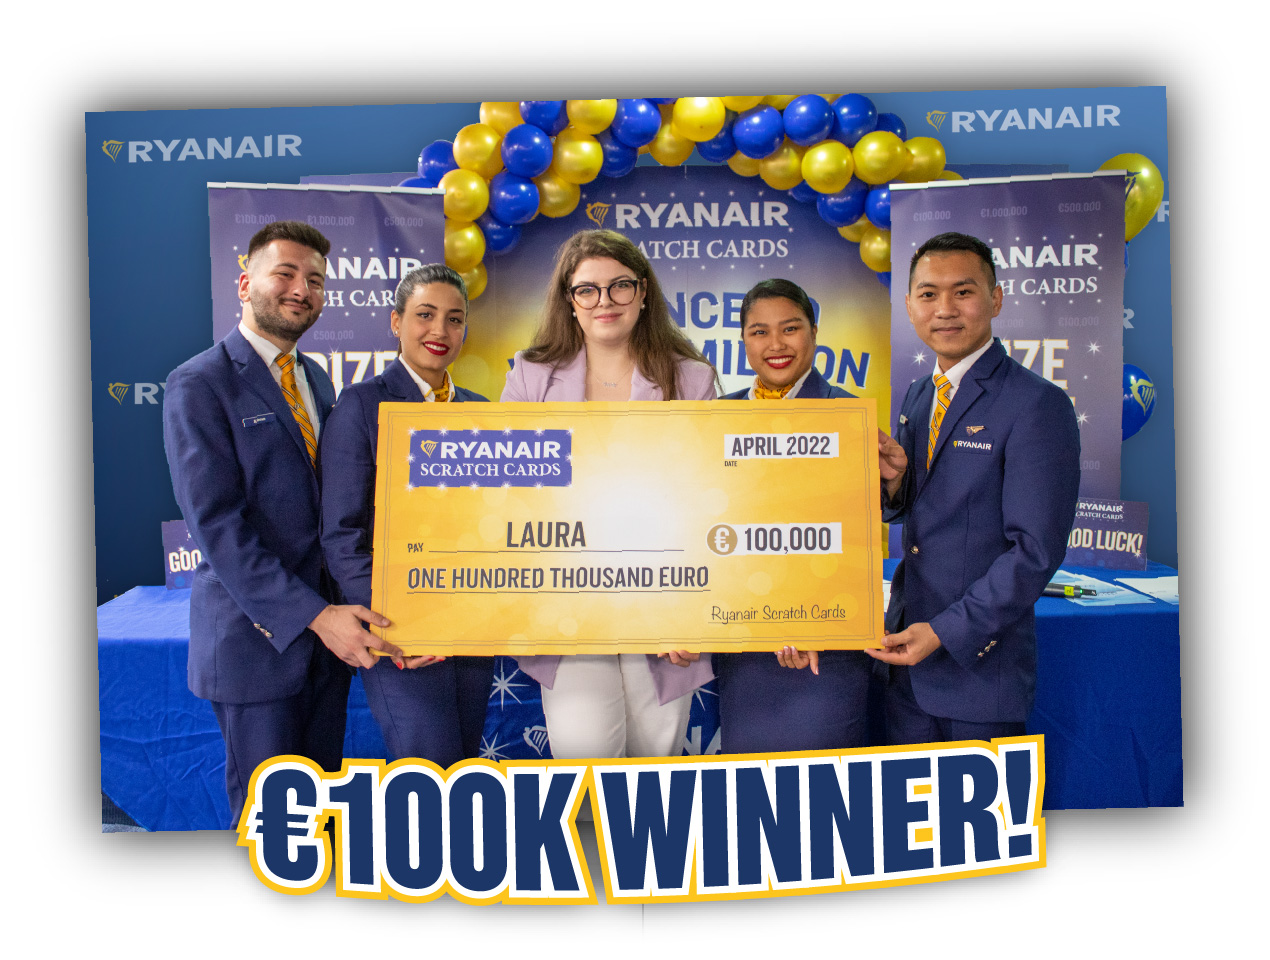 Laura Mereacre €100K winner!